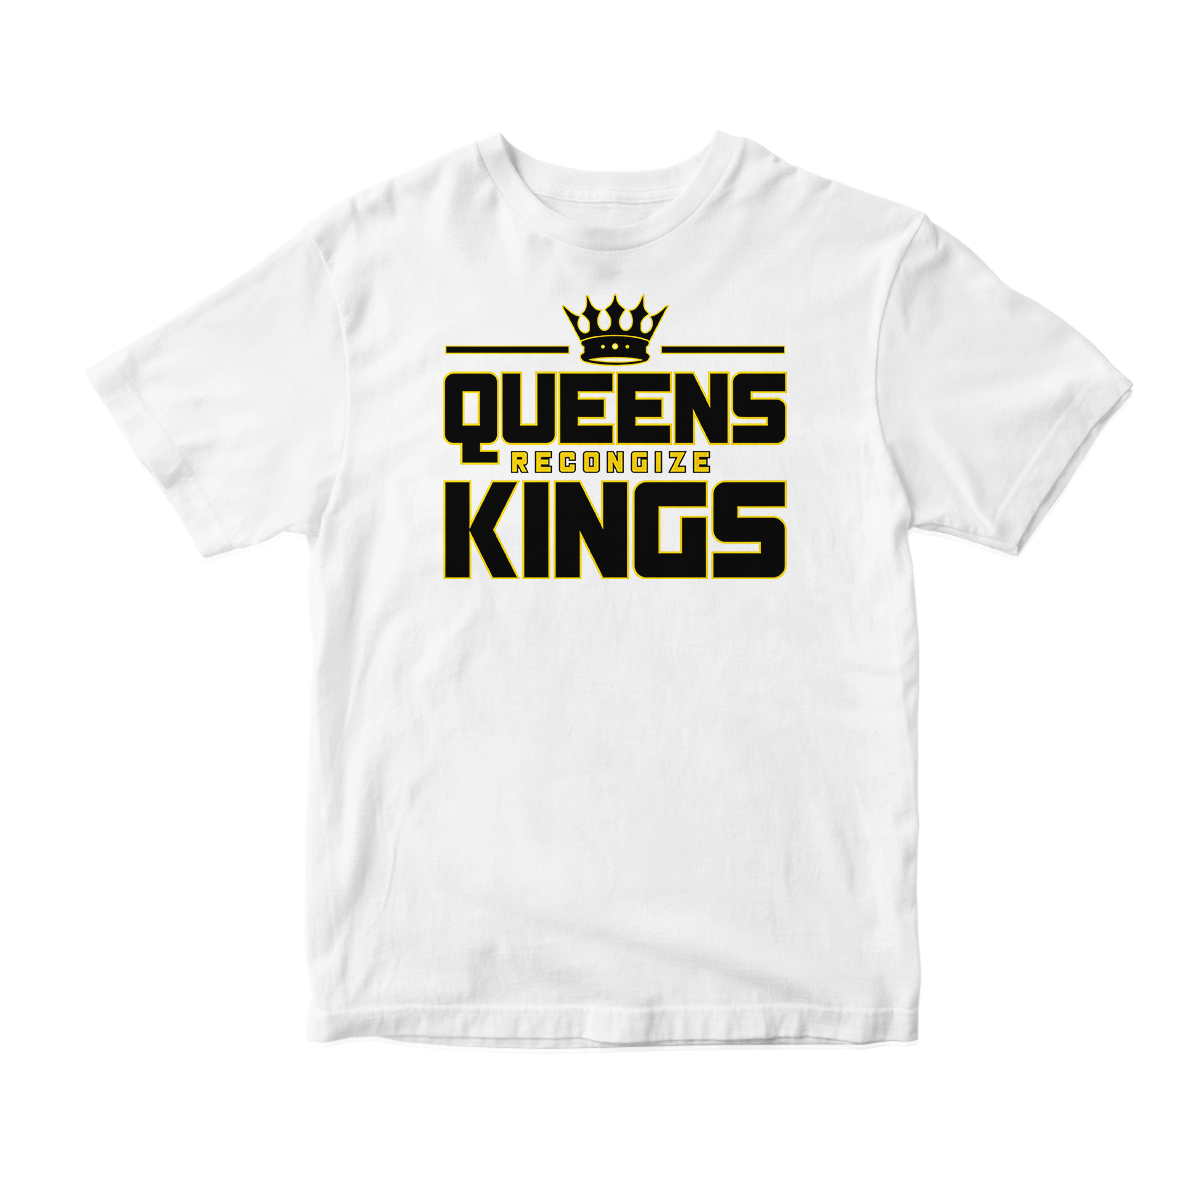 'Queens Recognize Kings' Short Sleeve Tee